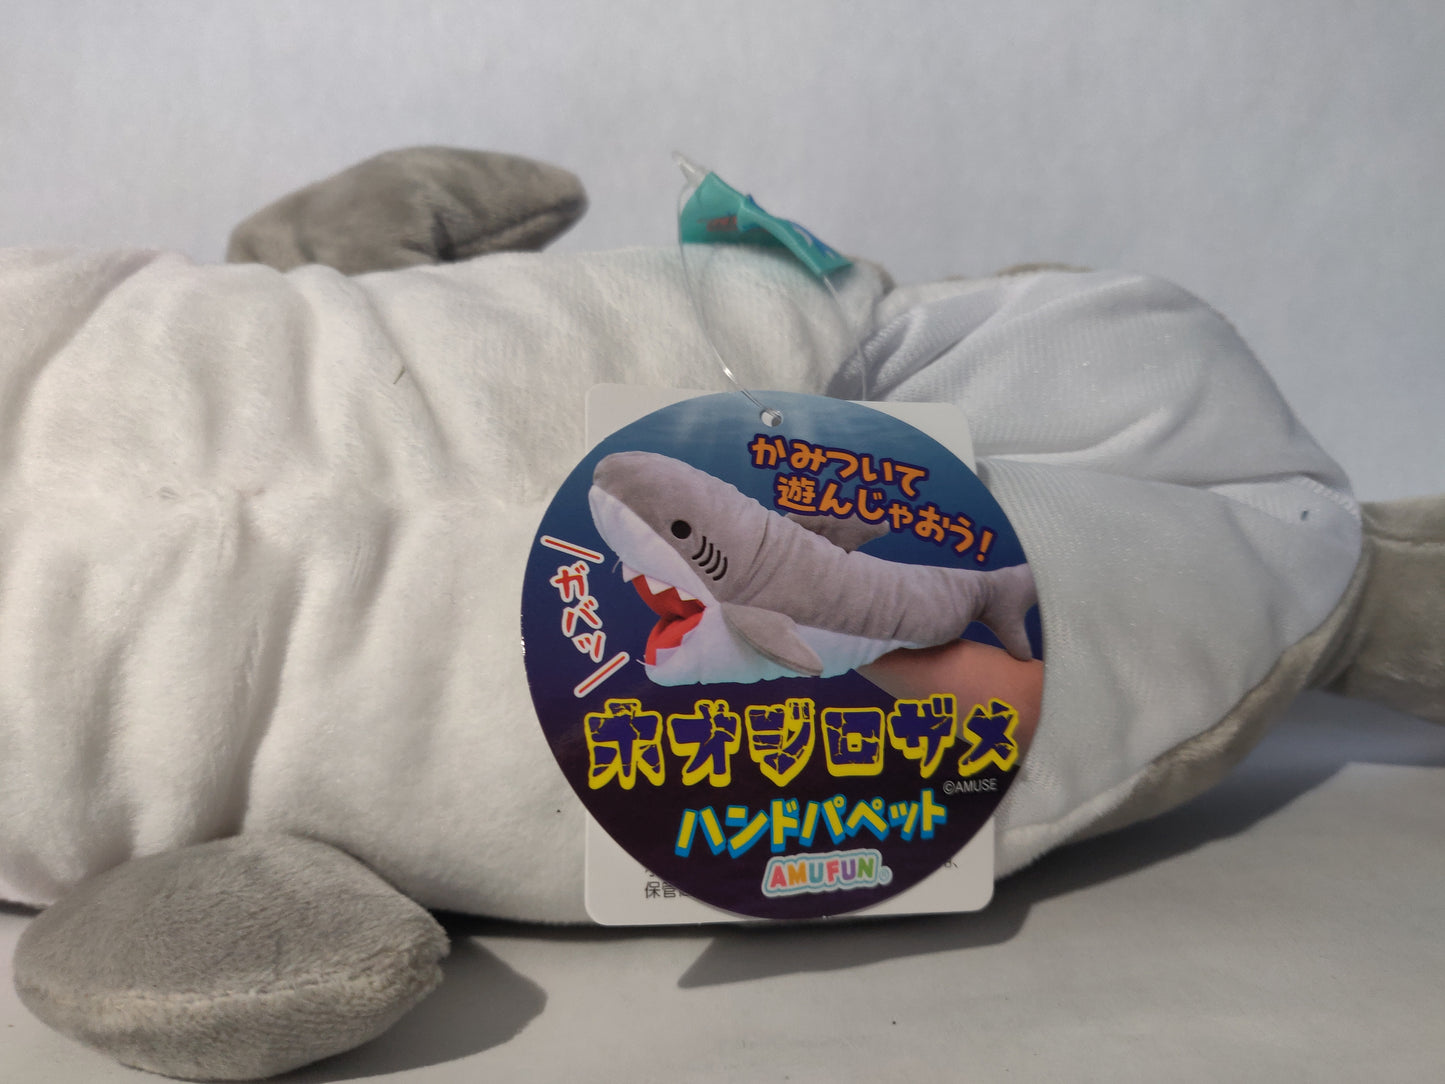 Amufun Hand puppet shark plush 15" (Grey)